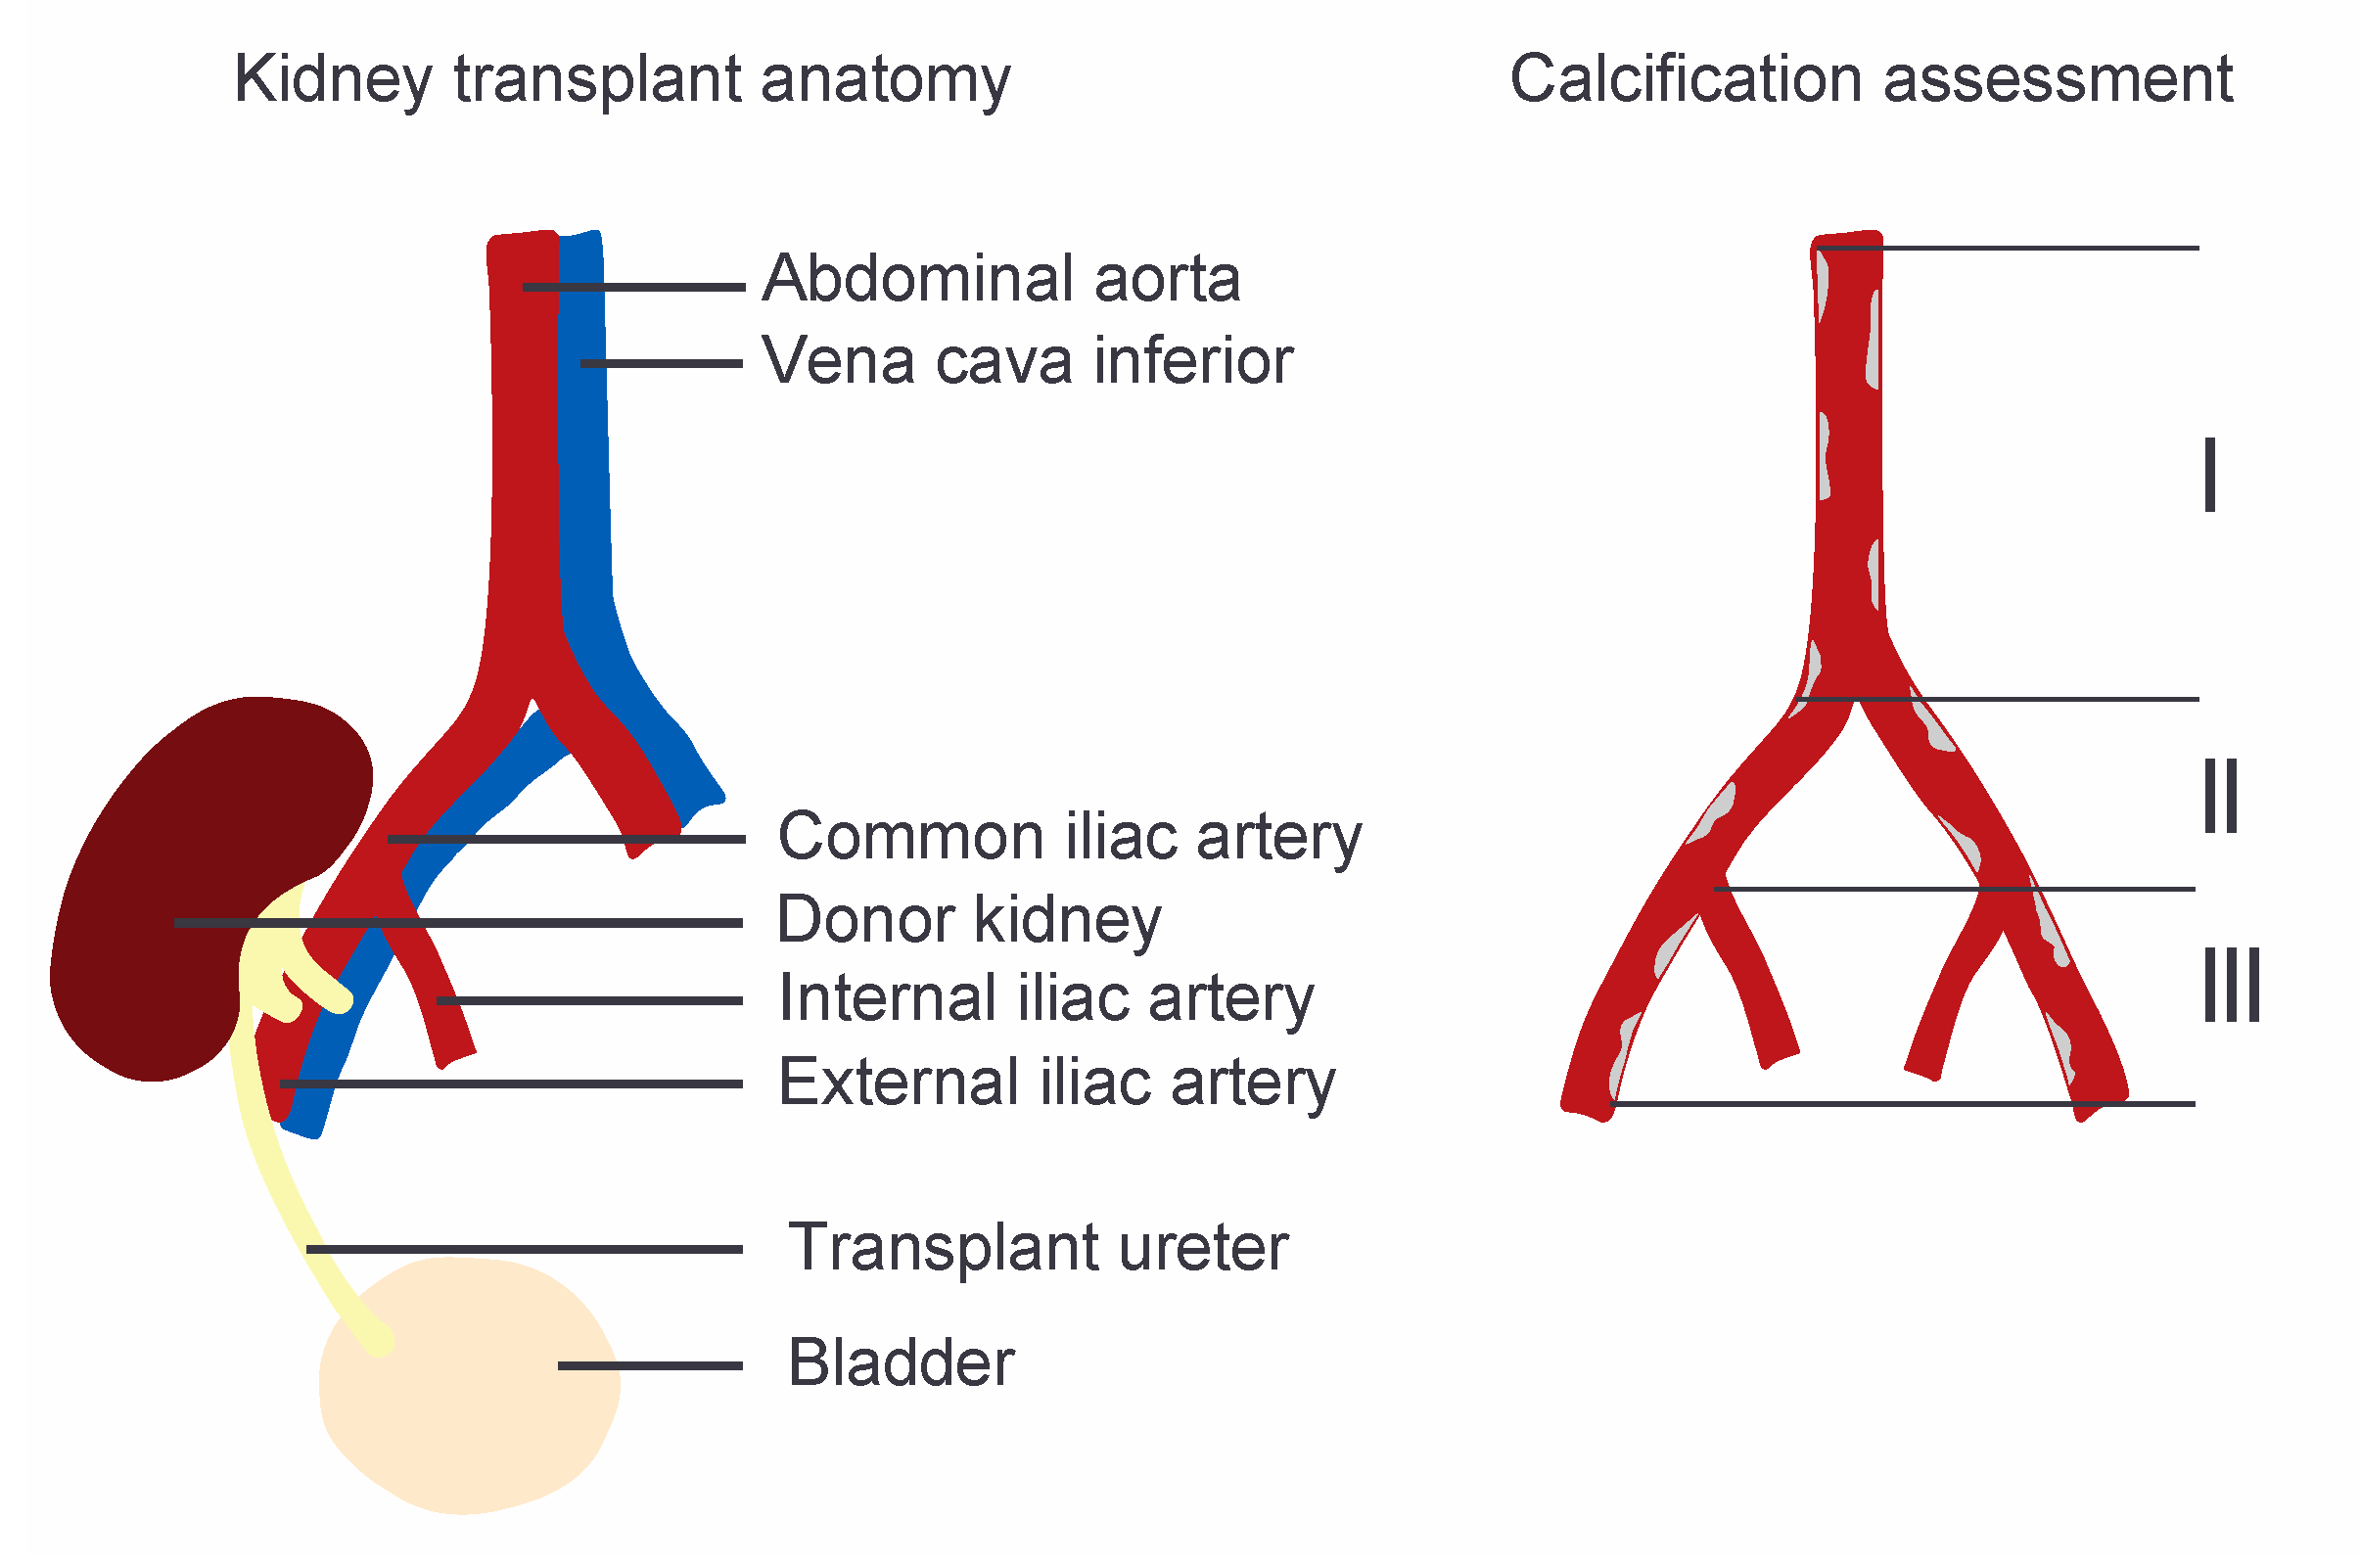 external iliac arteries cat